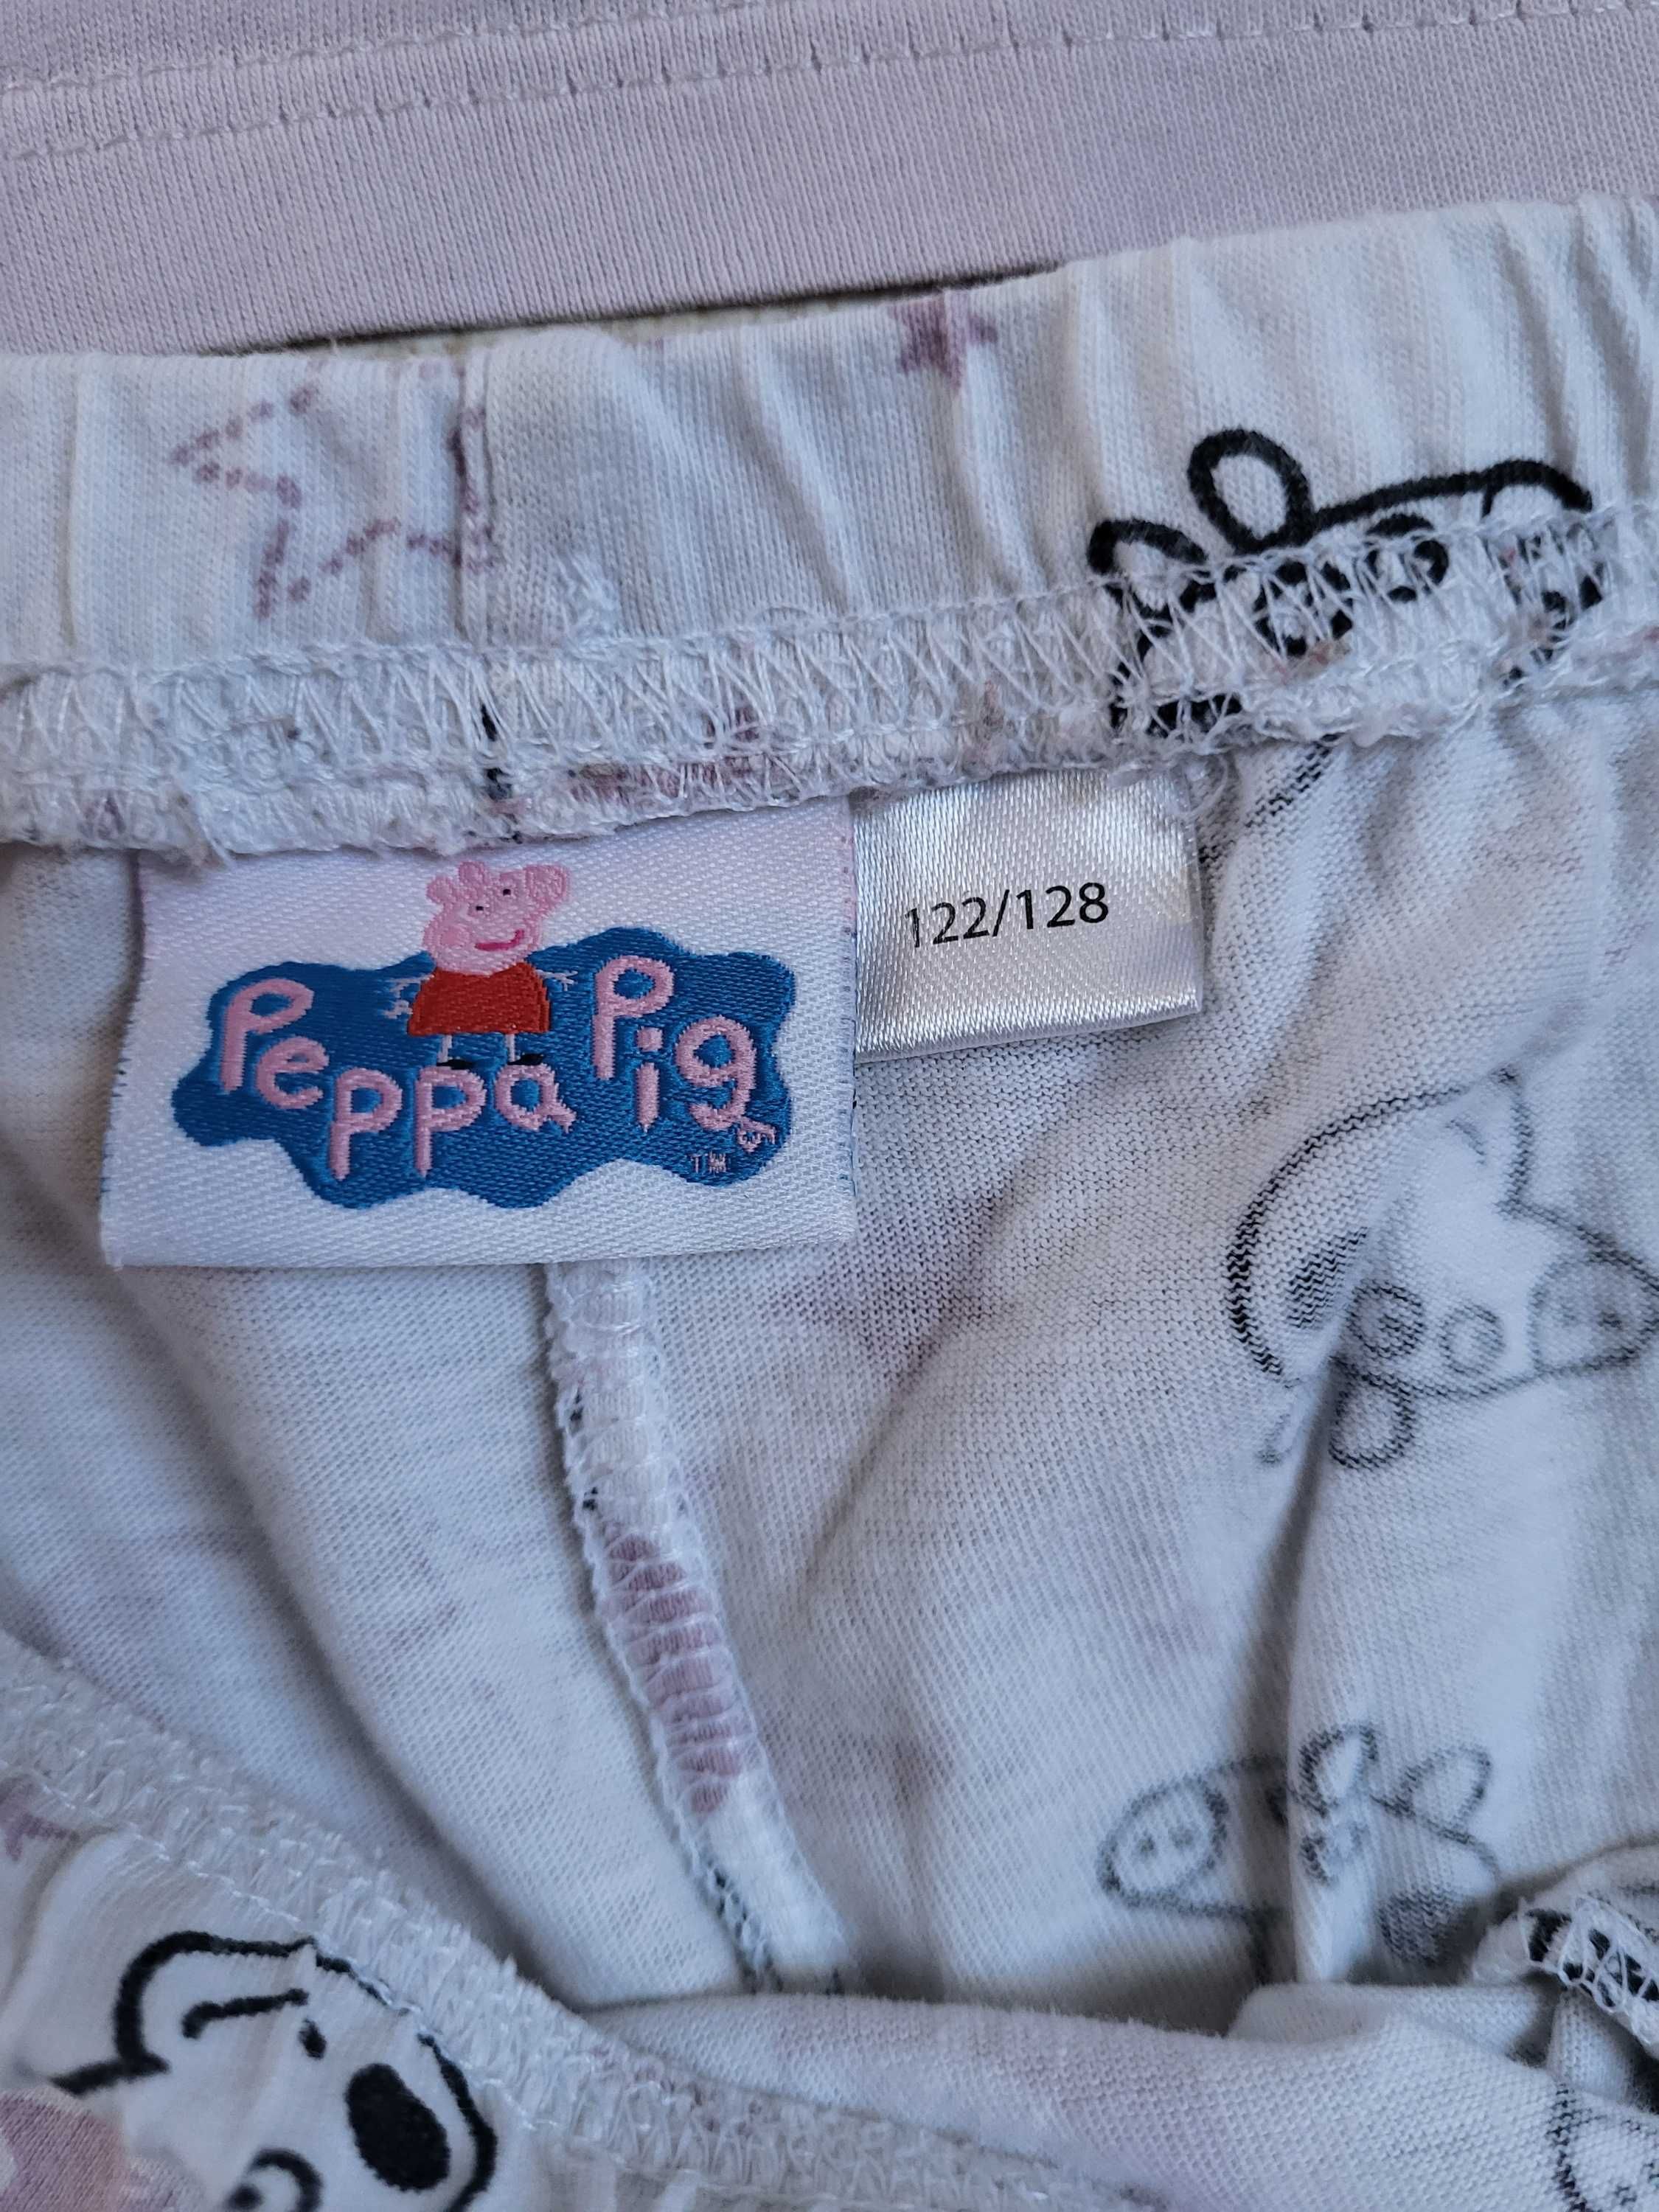 piżama dwuczęściowa Świnka Peppa, Peppa Pig Hasbro 122-128